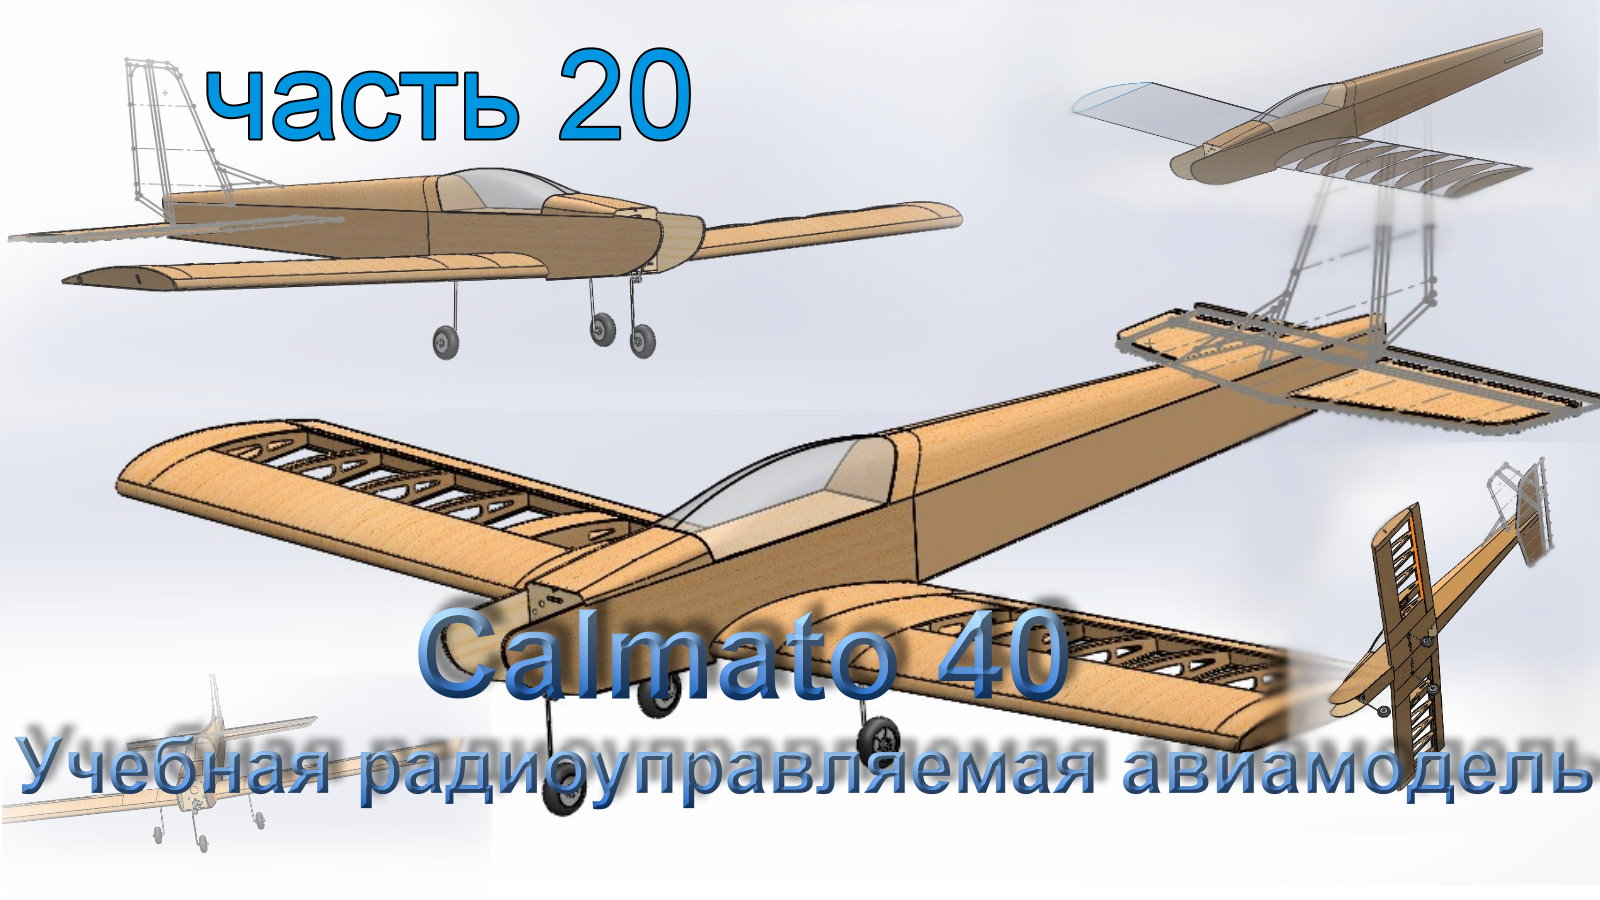 Учебная радиоуправляемая авиамодель Calmato 40 (часть 20)